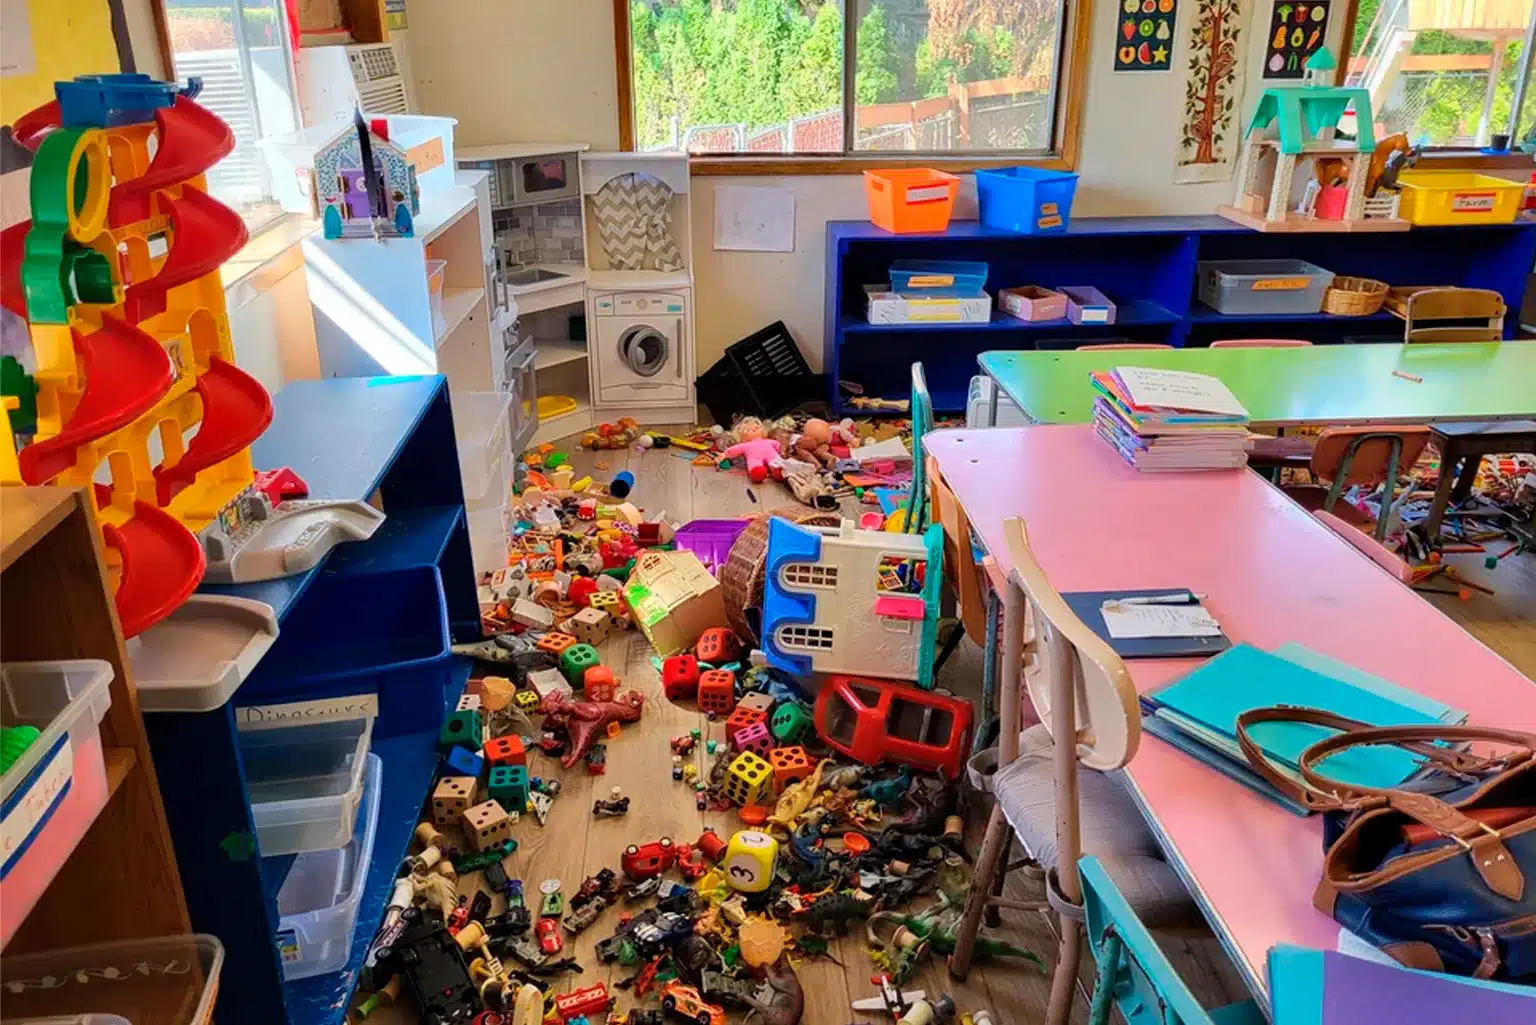 Professora Compartilha Foto De Bagunça Causada Por Criança De 3 Anos Em Sala De Aula